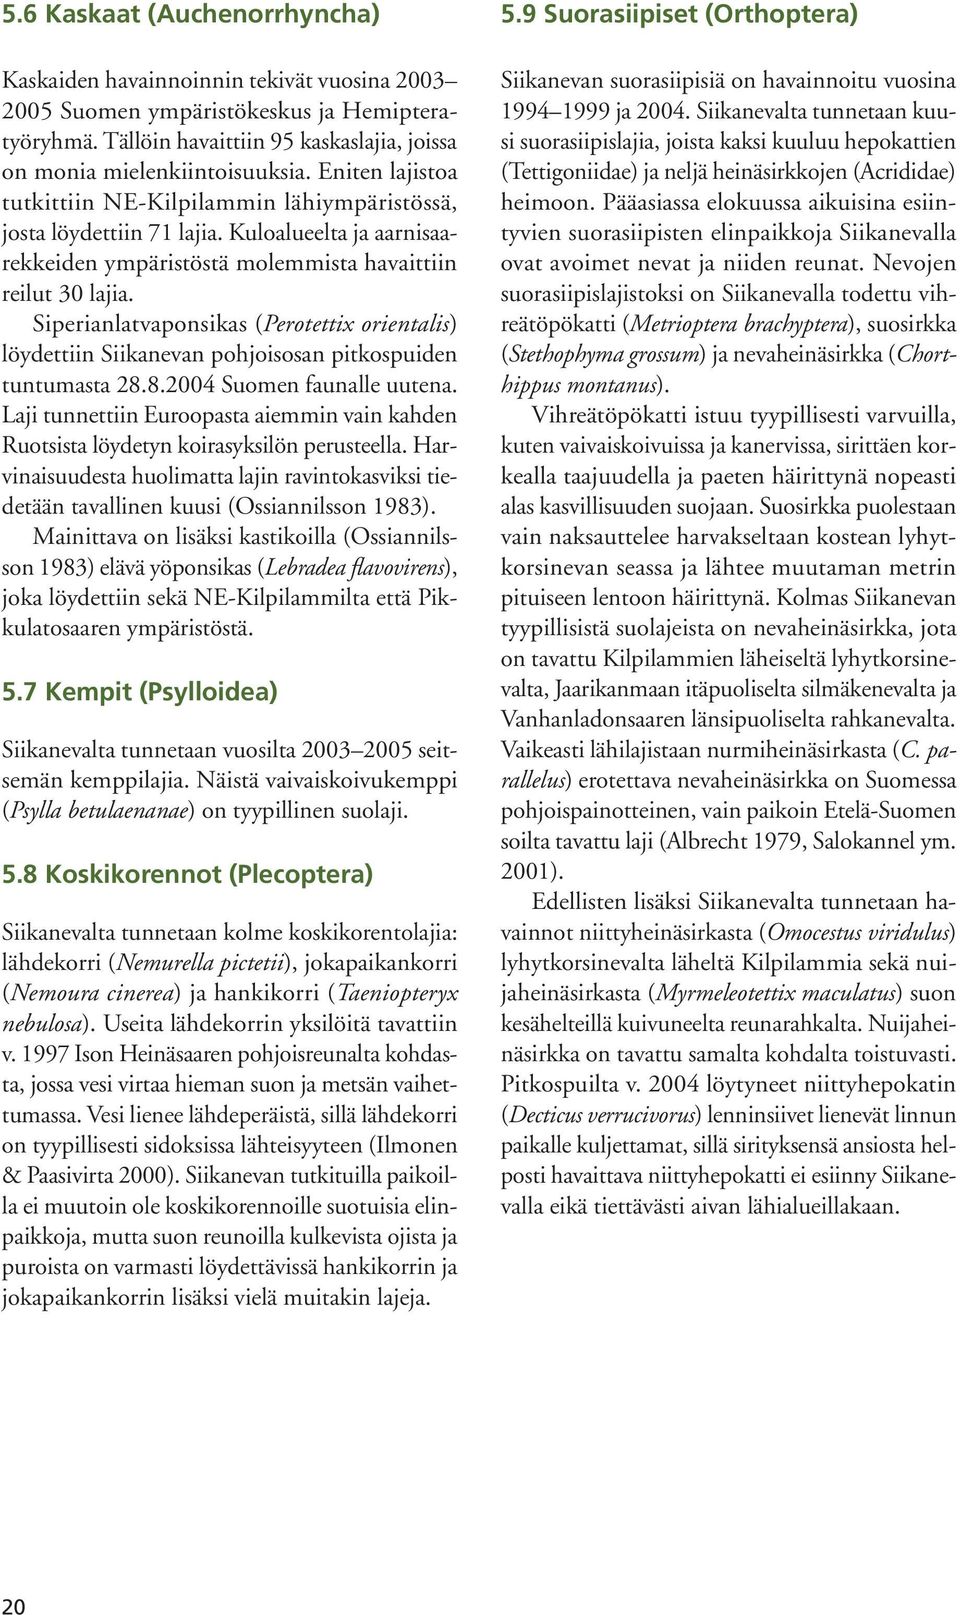 Siperianlatvaponsikas (Perotetti orientalis) löydettiin Siikanevan pohjoisosan pitkospuiden tuntumasta 28.8.2004 Suomen faunalle uutena.